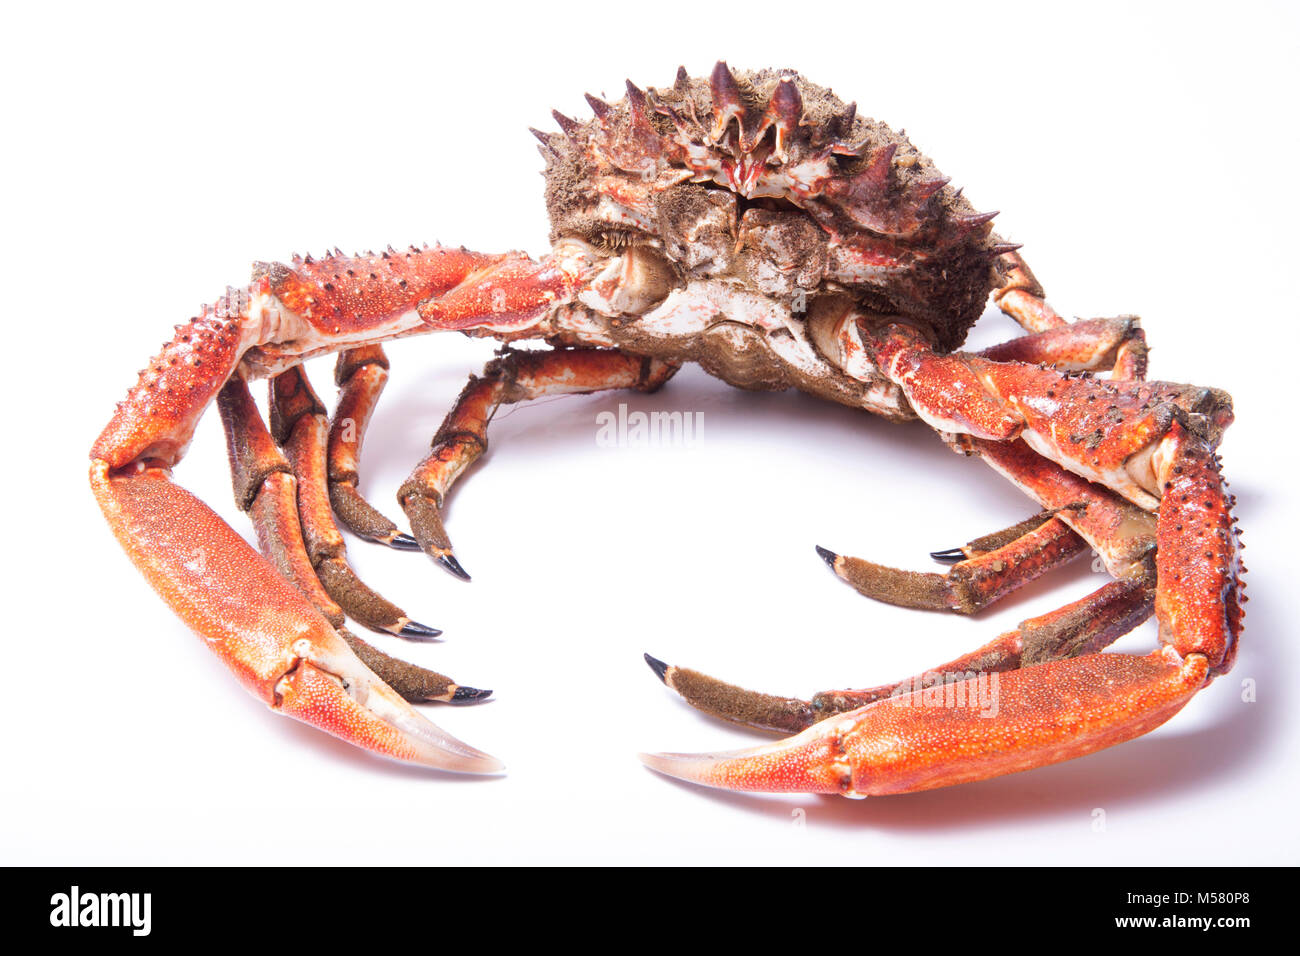 Un crabe araignée mâle cru, non cuit, Maja spunado, capturé dans Dorset England UK GB en utilisant un filet de réduction pêché à partir d'un quai. Fond blanc. Banque D'Images